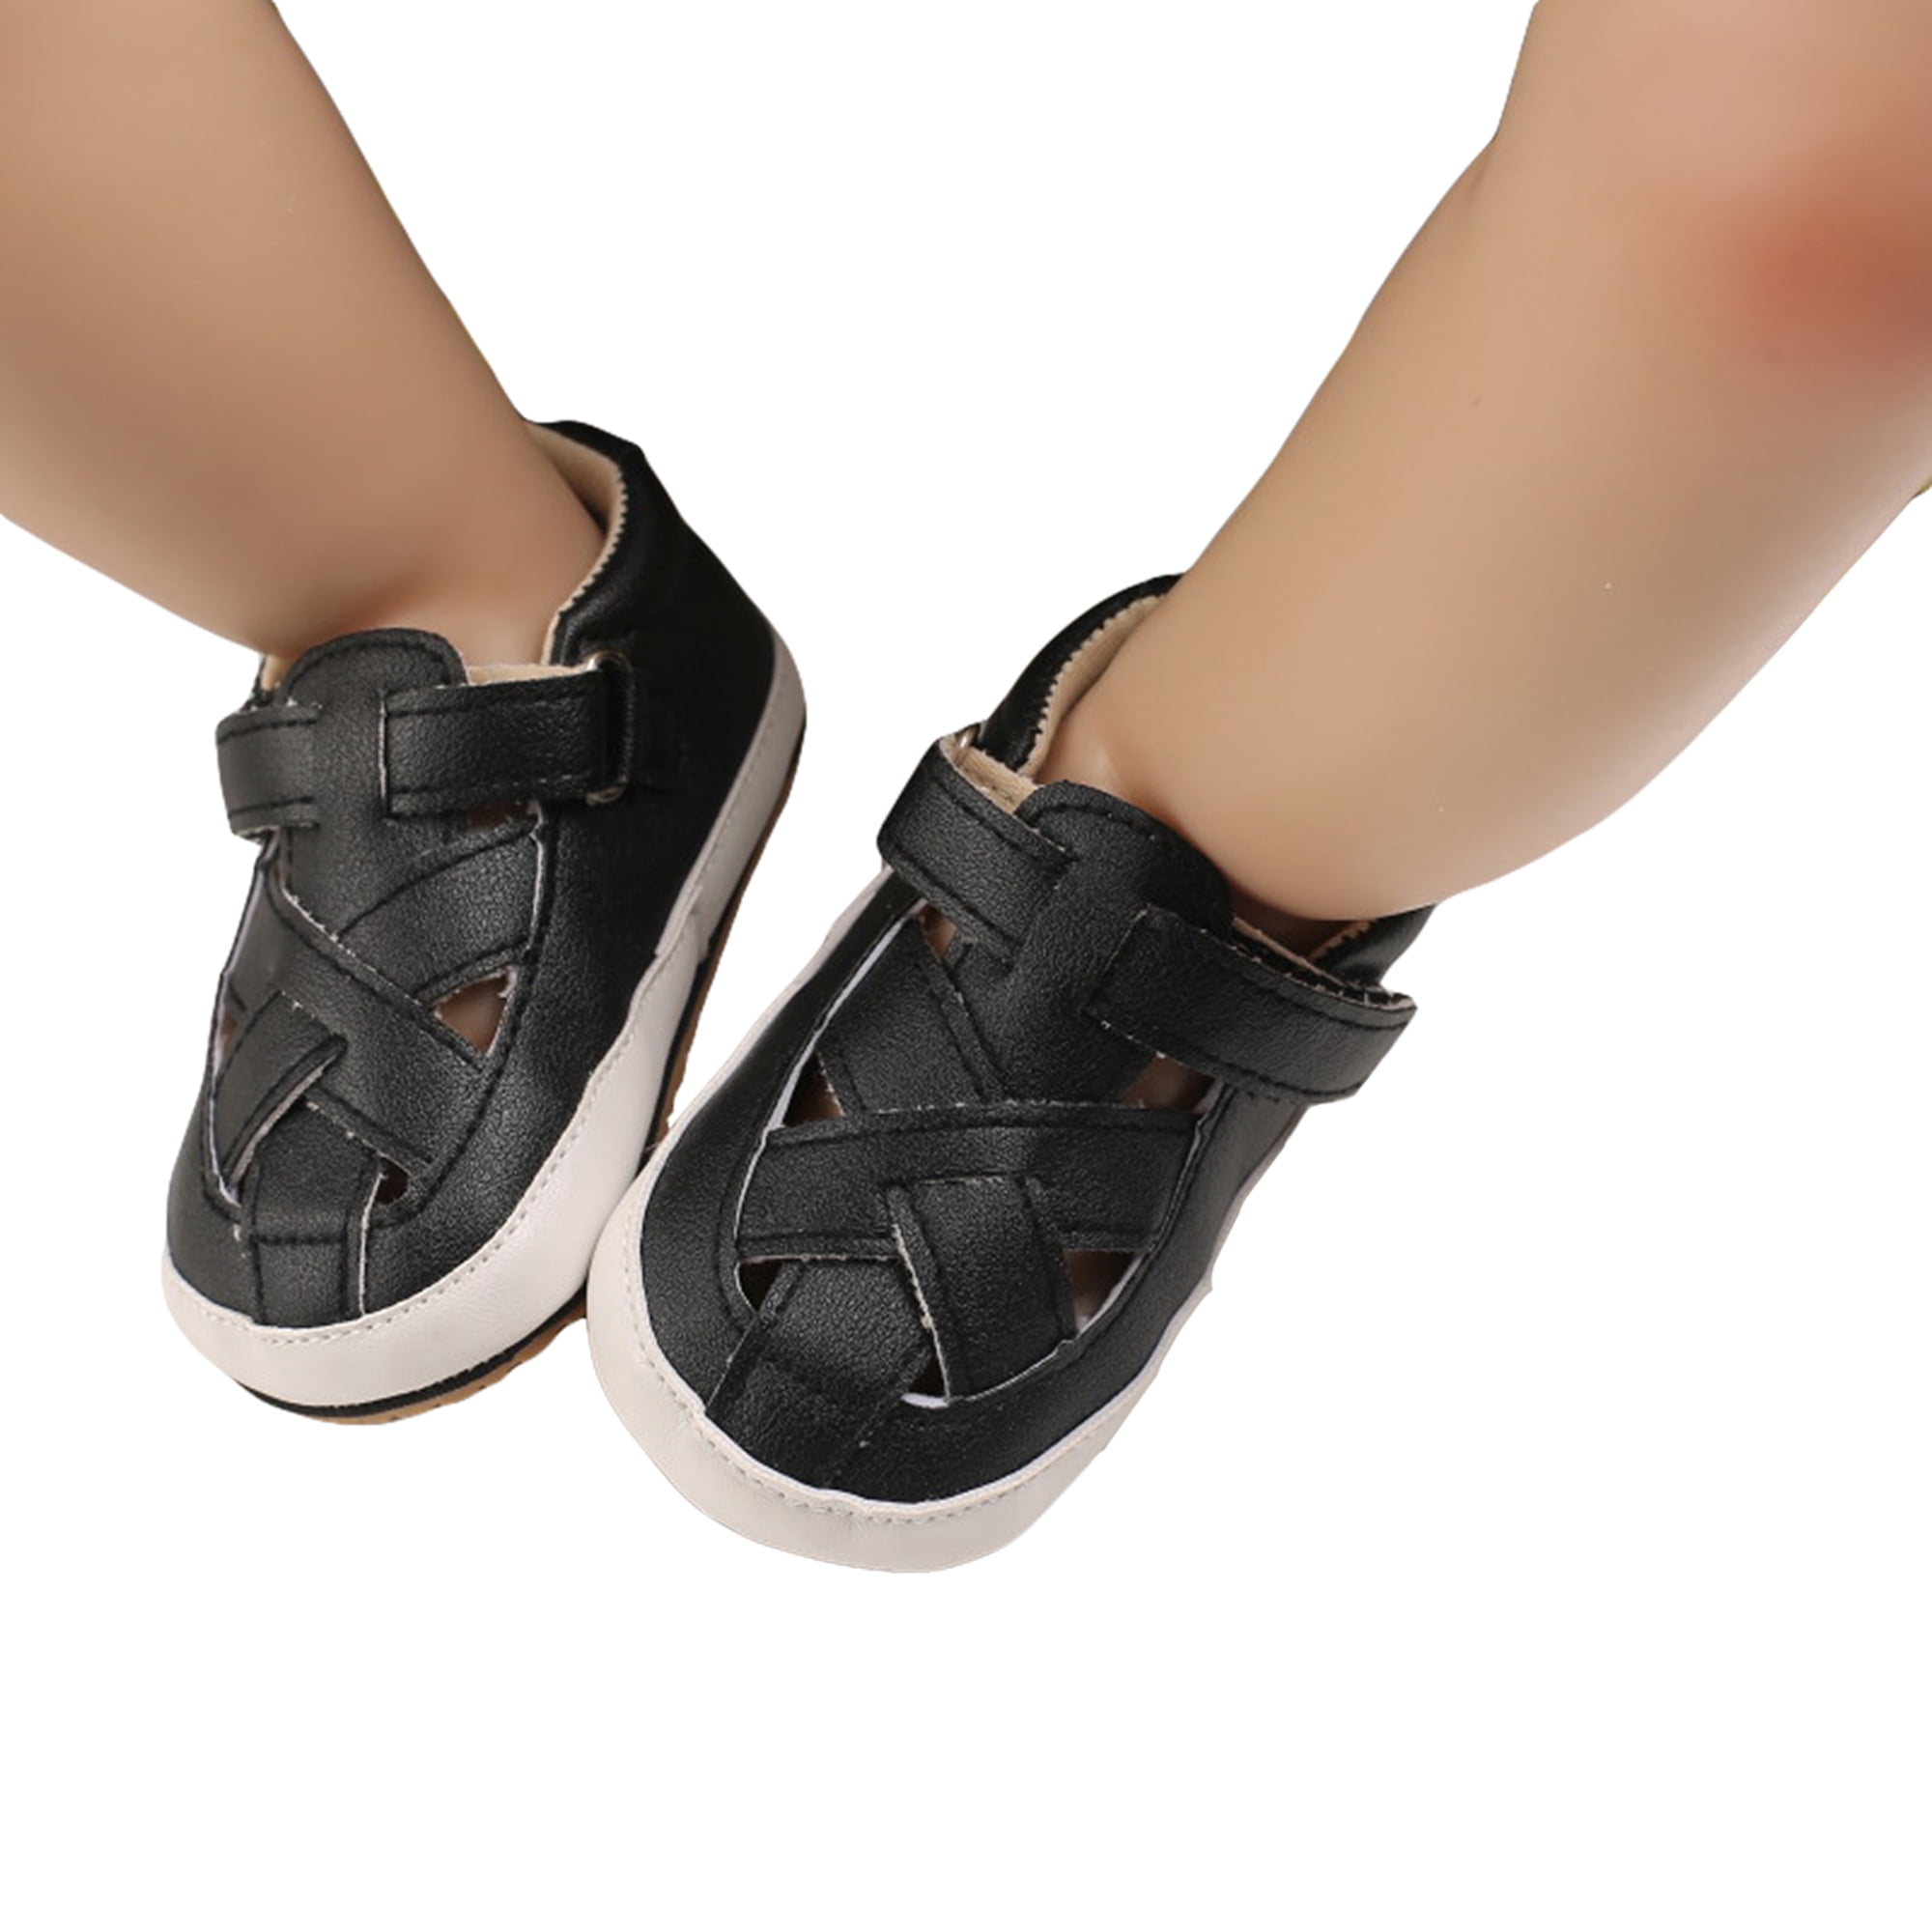 Details about   New Kids Fringe Thong Sandal Gladiator Shoes Black Size 13 